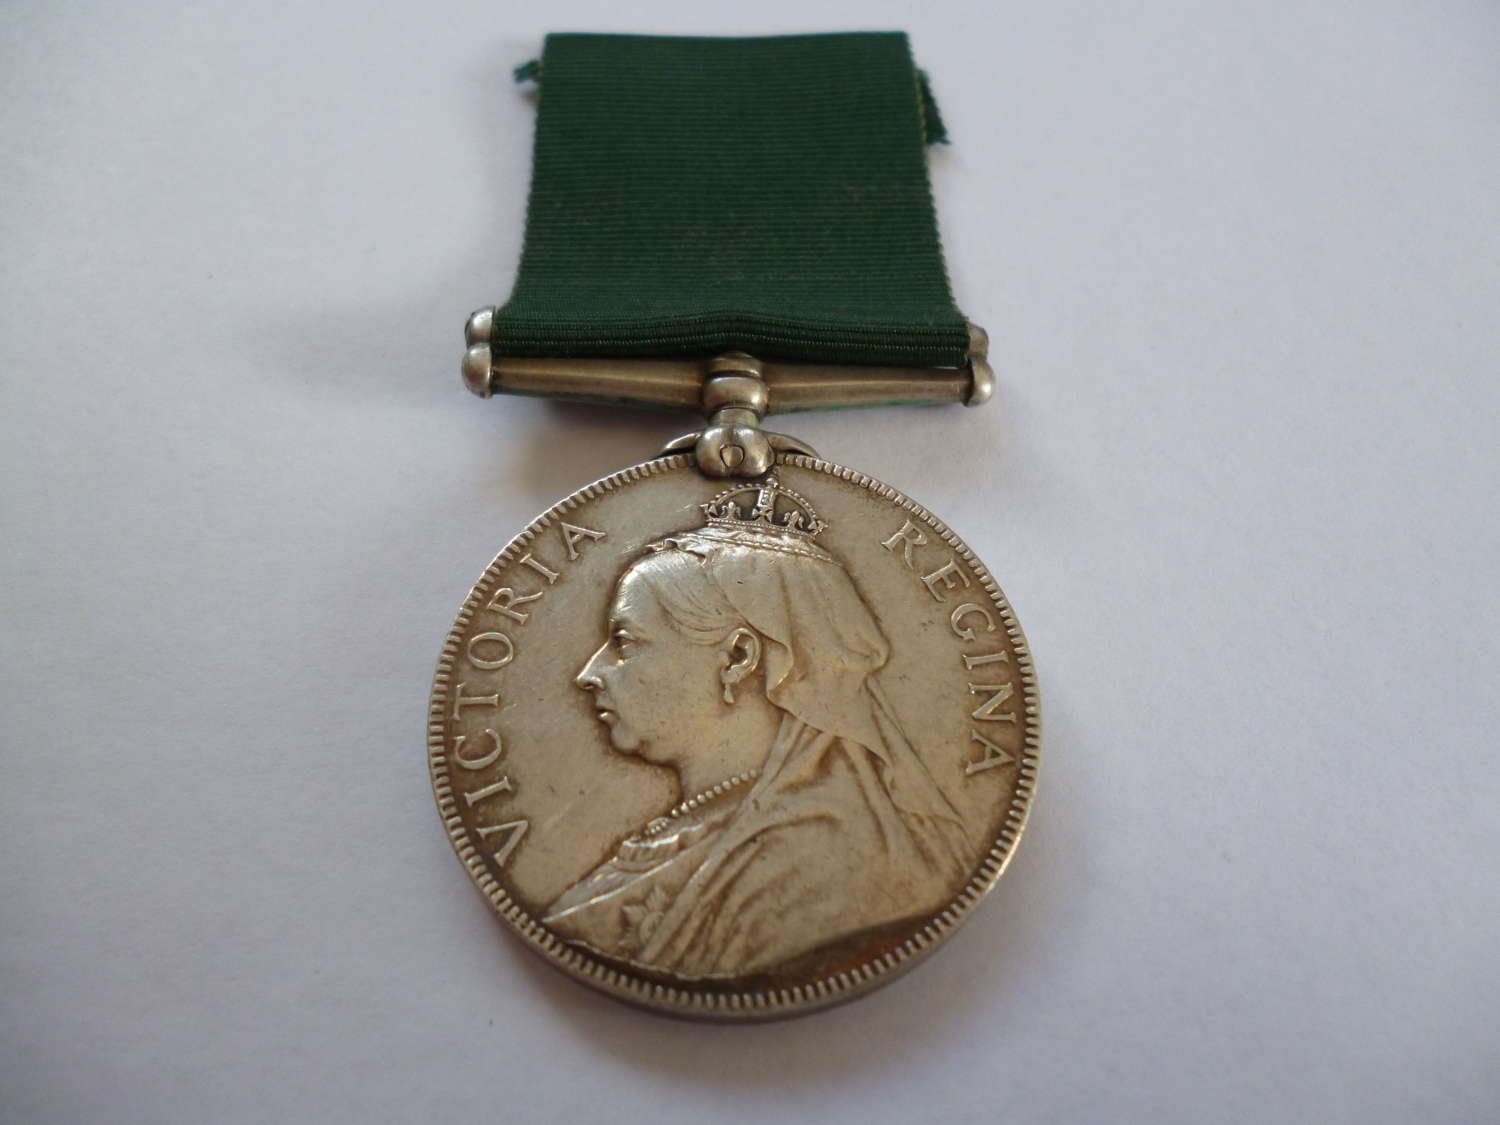 Queen Victoria Volunteer Service Medal